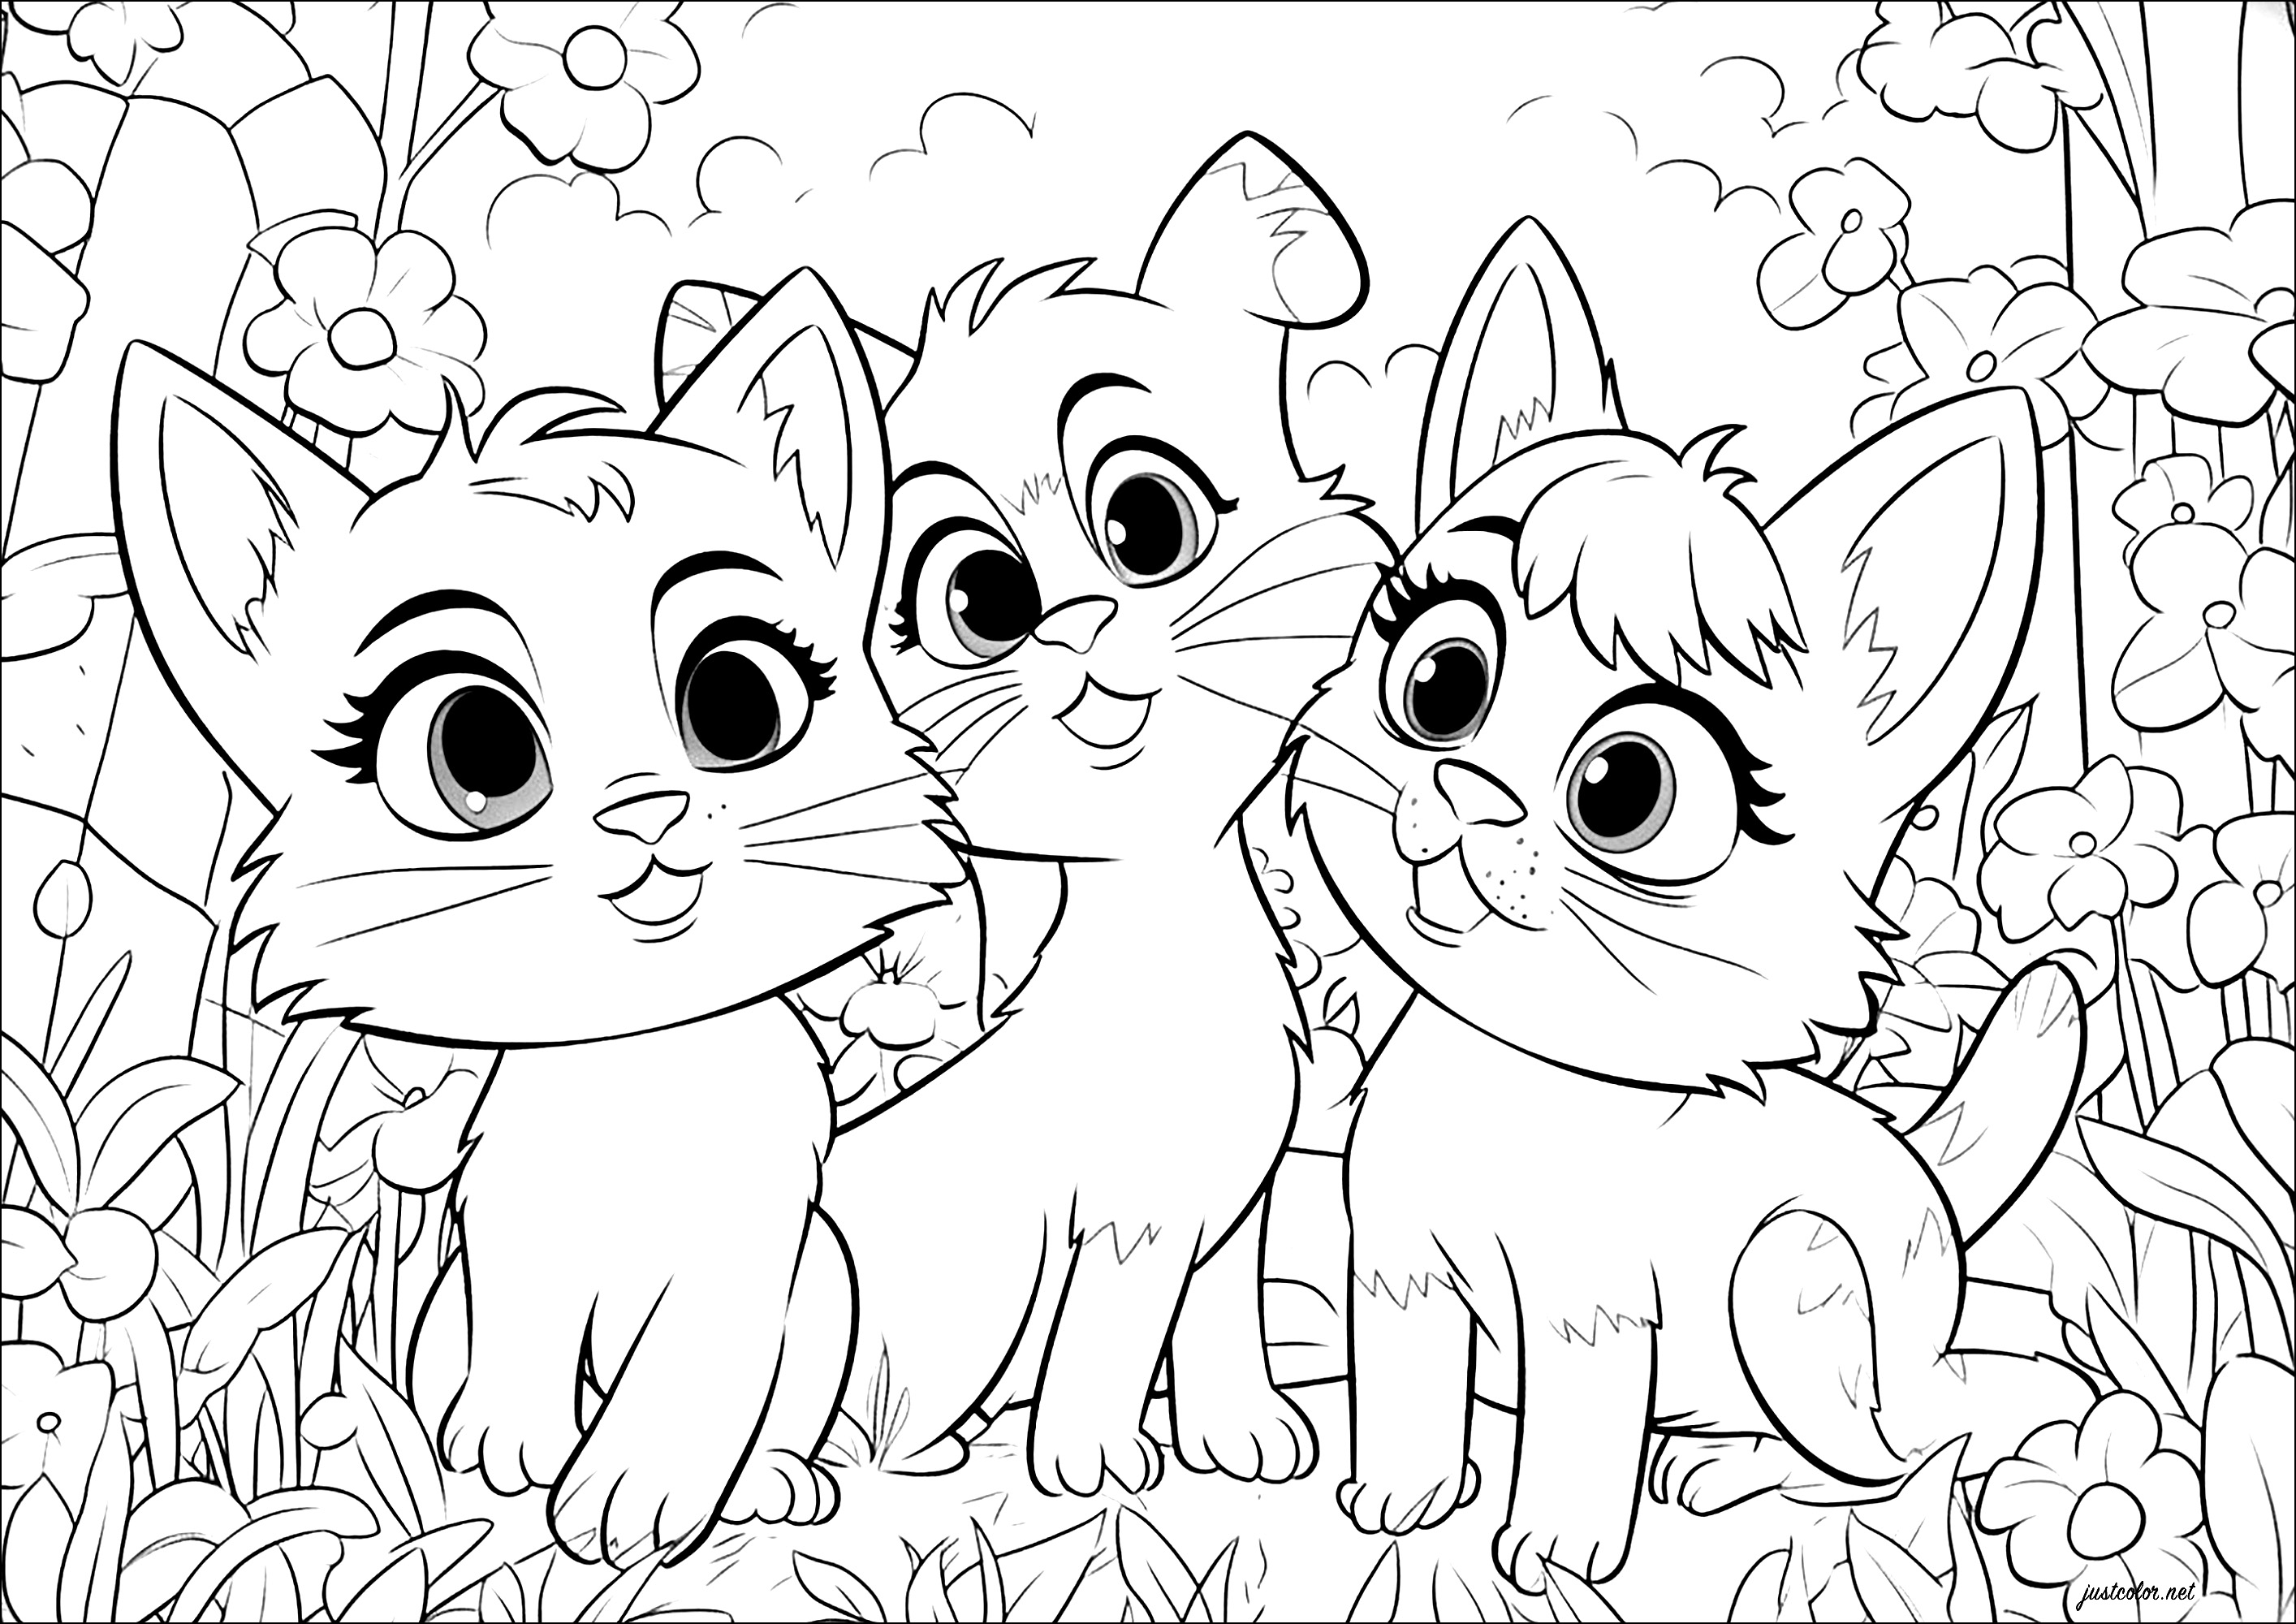 Trois chats, style Disney - Pixar. Ces trois chats sont dessinés avec un style proche des films d'animation Disney - Pixar